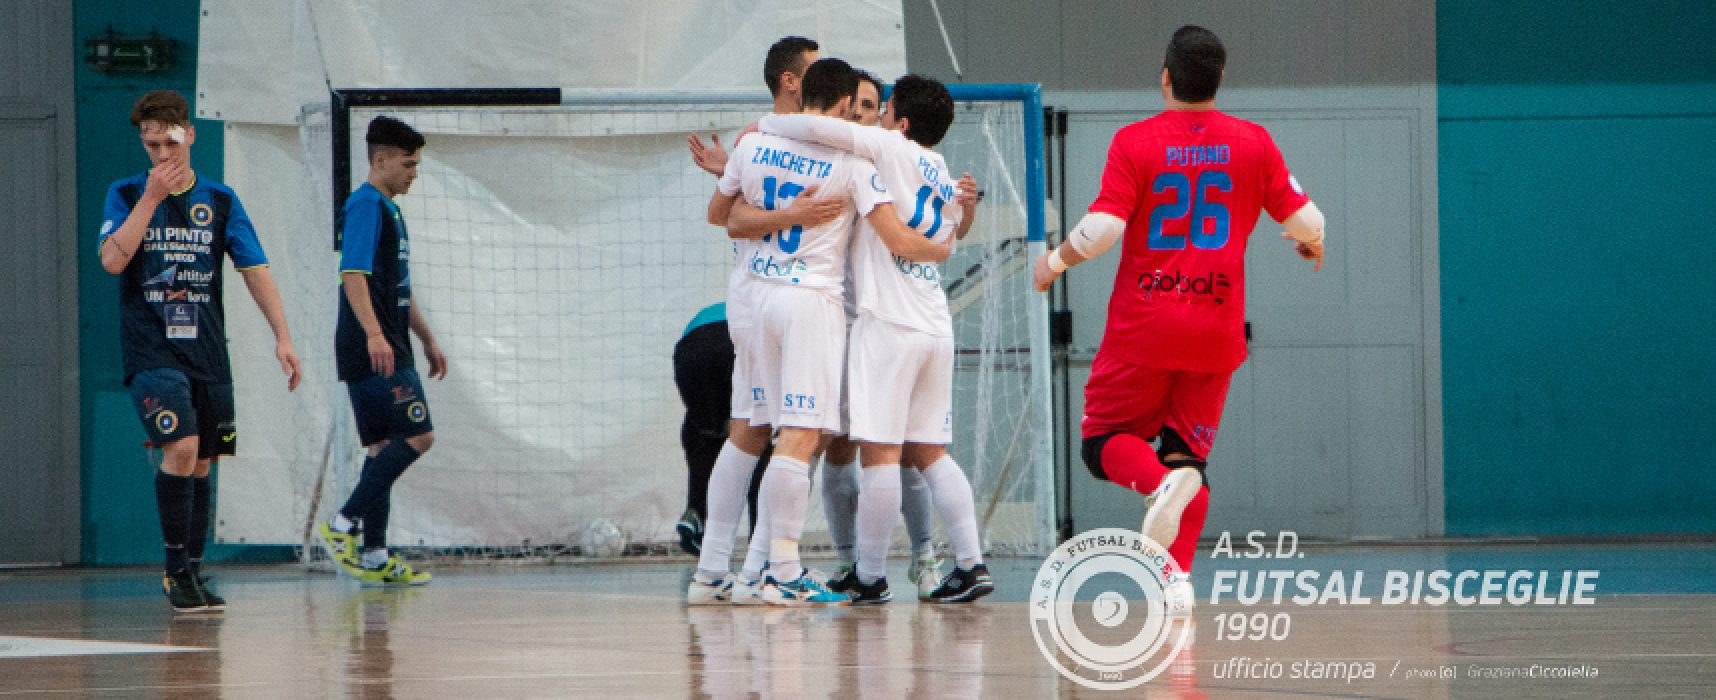 Troppo Maritime per il Futsal Bisceglie, la capolista passa 8-0 al PalaDolmen